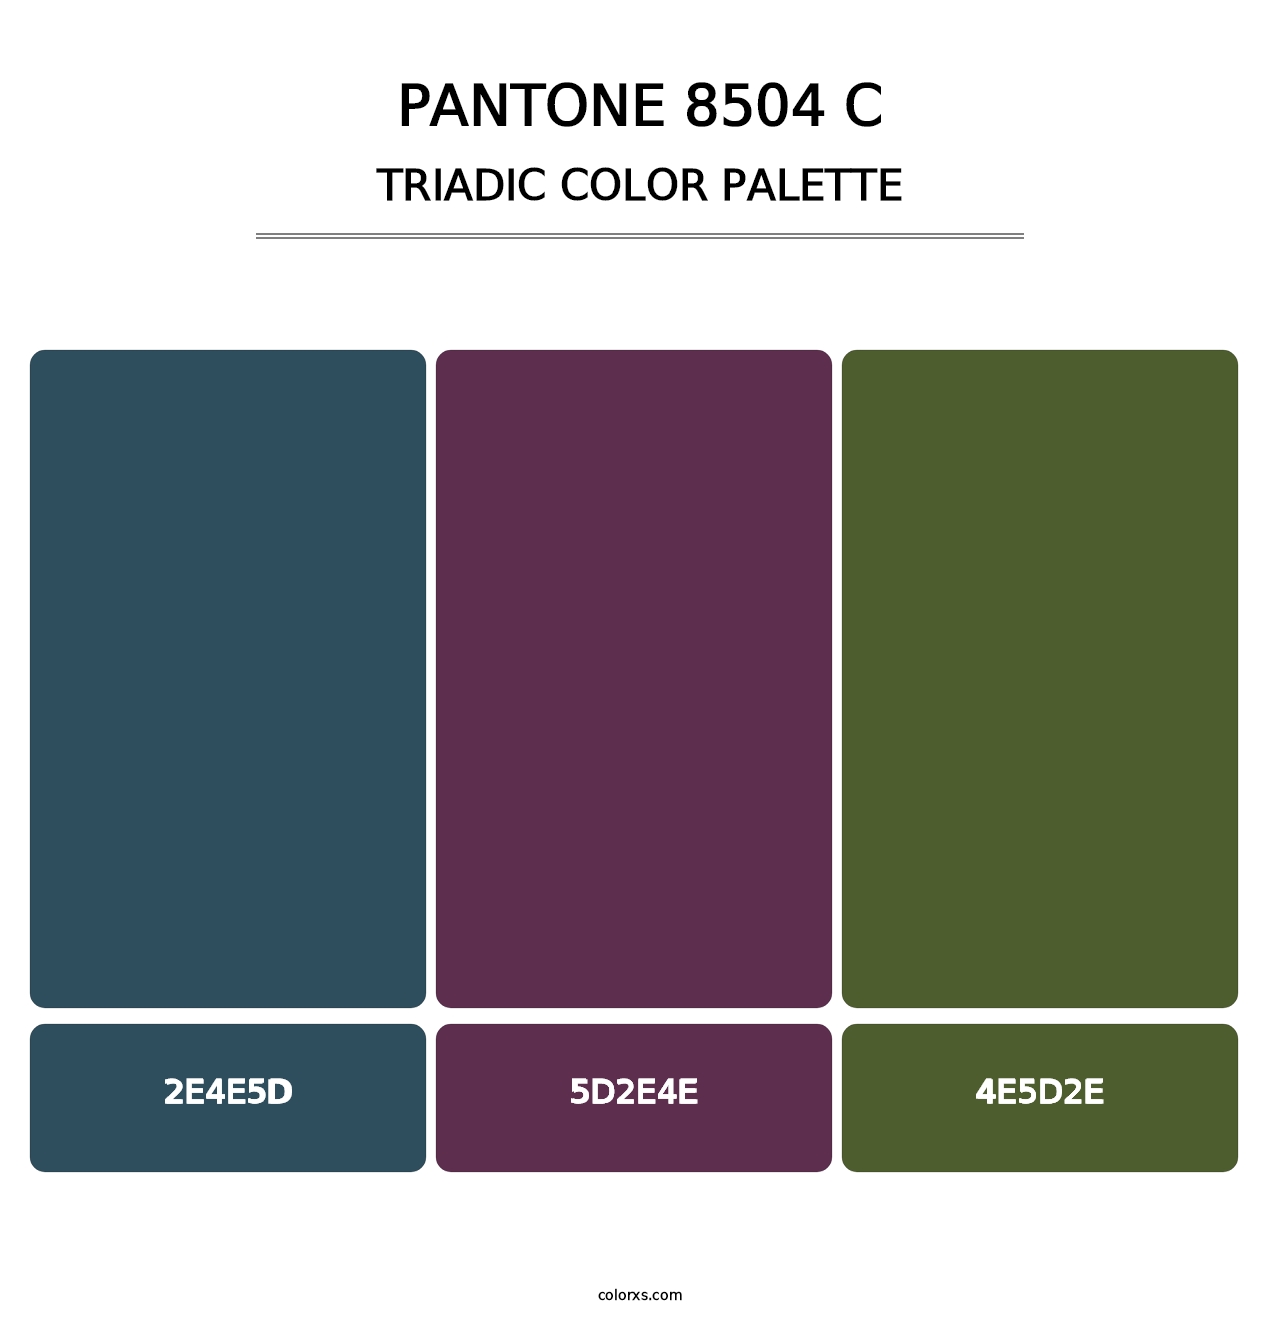 PANTONE 8504 C - Triadic Color Palette